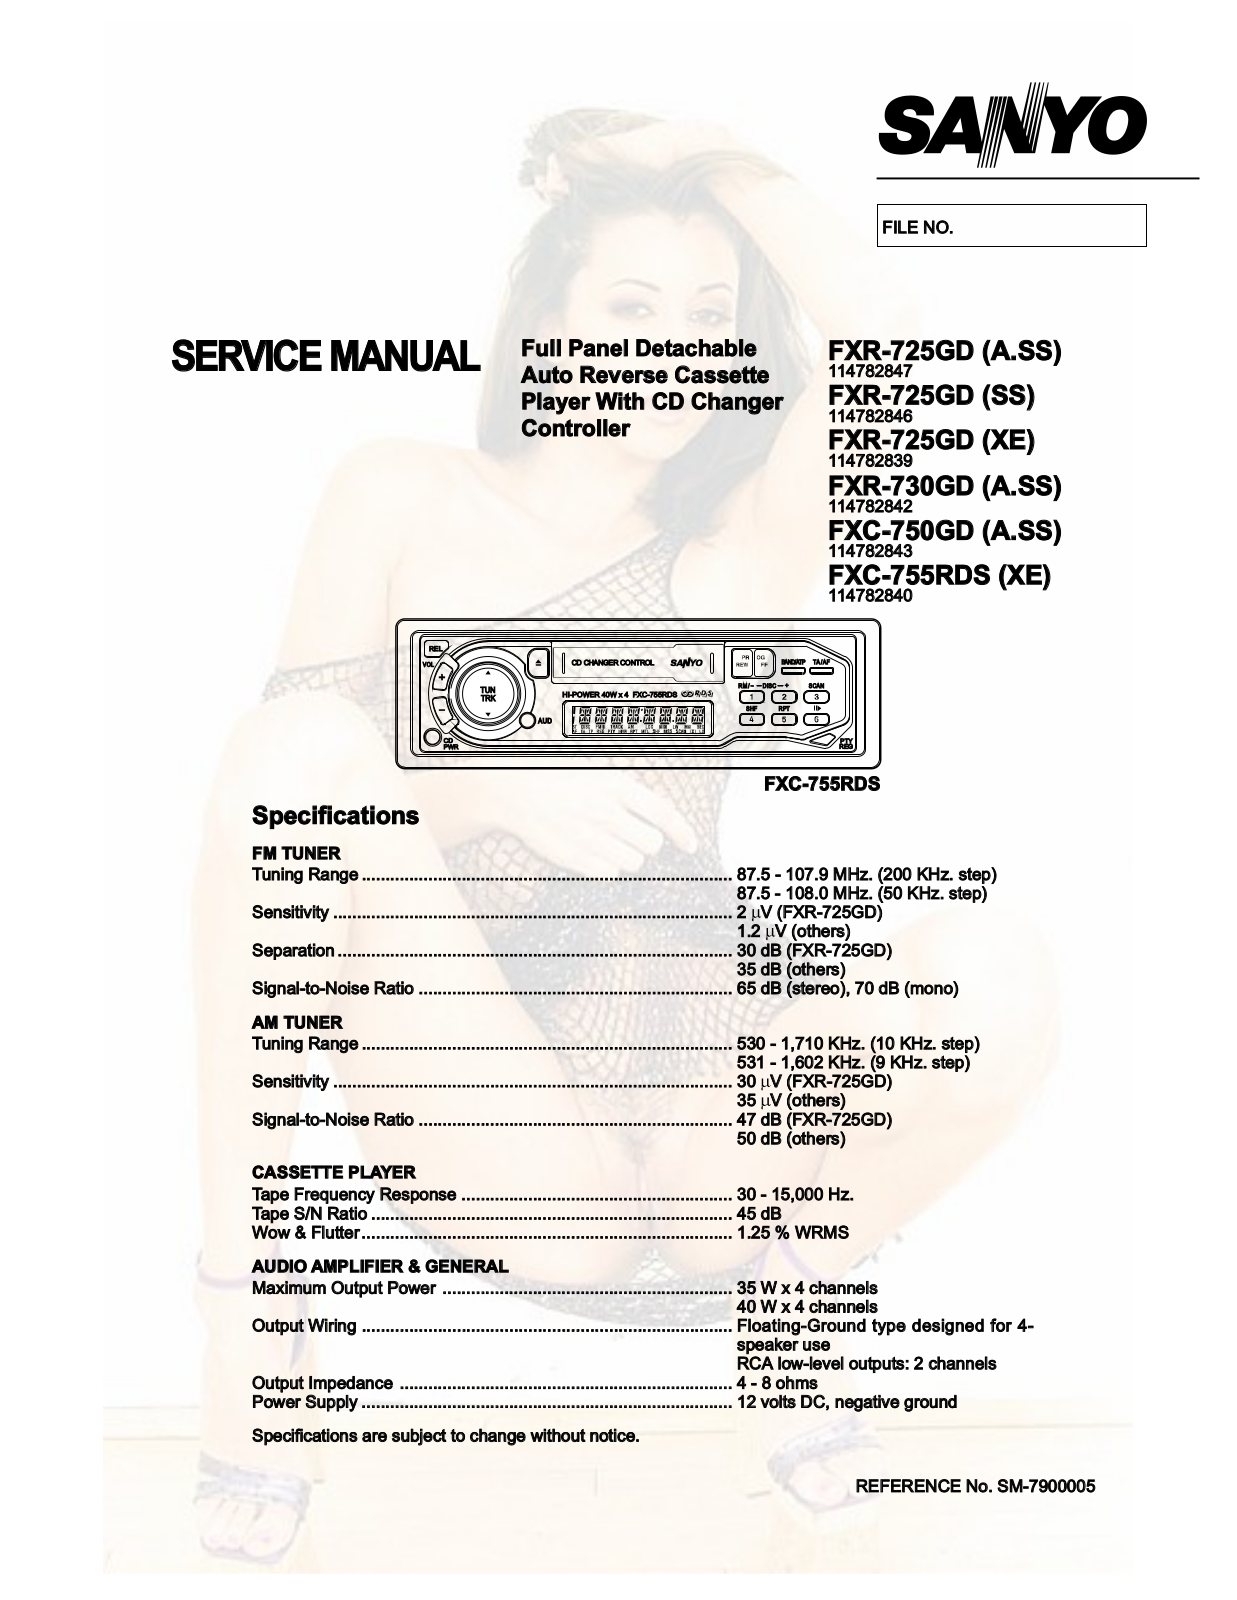 Sanyo FXD-725-GD, FXD-730-GD, FXD-750-GD, FXD-755-GD Service manual